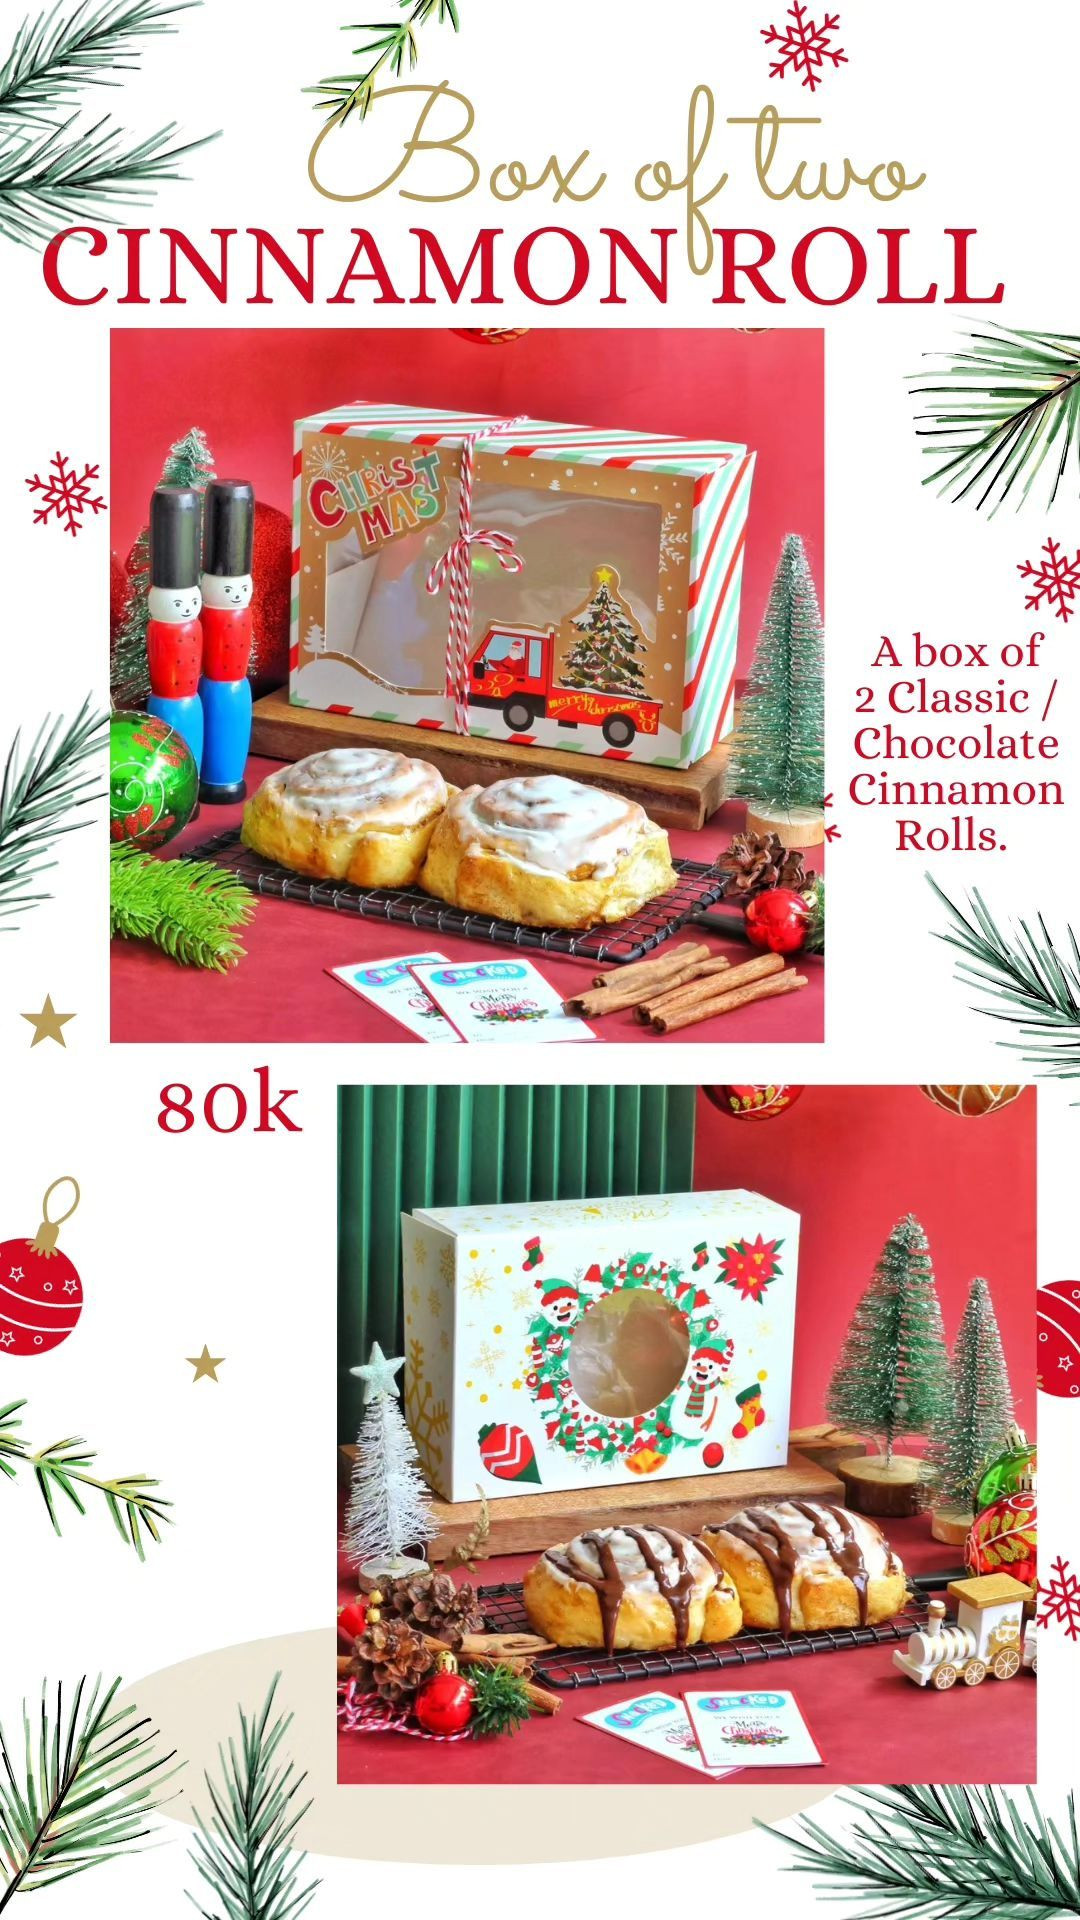 Christmas Cinnamon roll